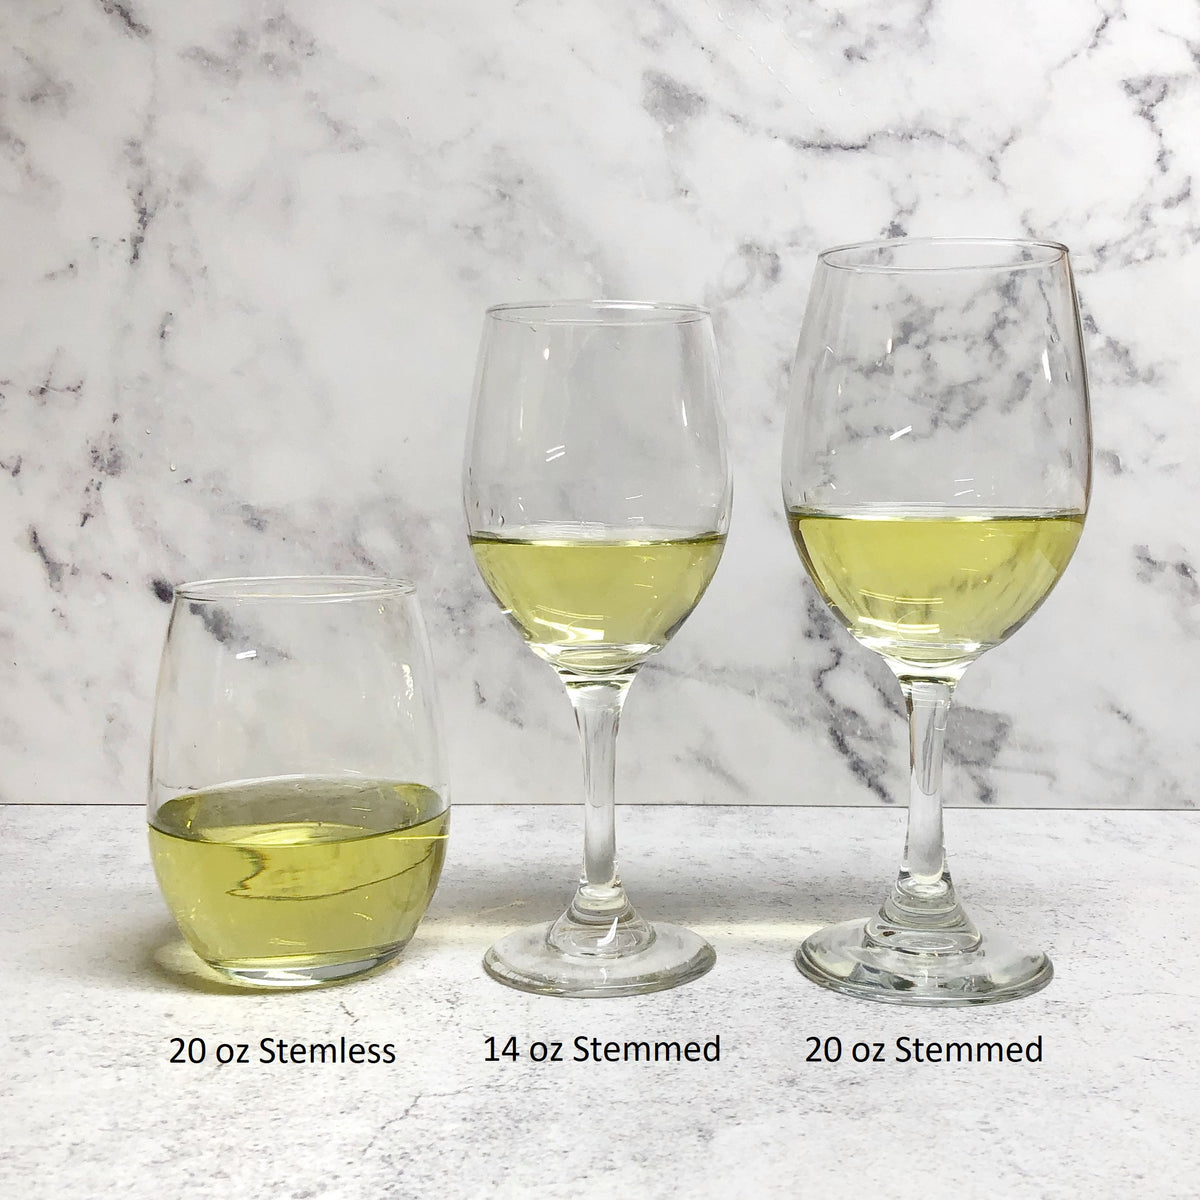 Black and White Rosebuds Wine Glasses (Set of 2)